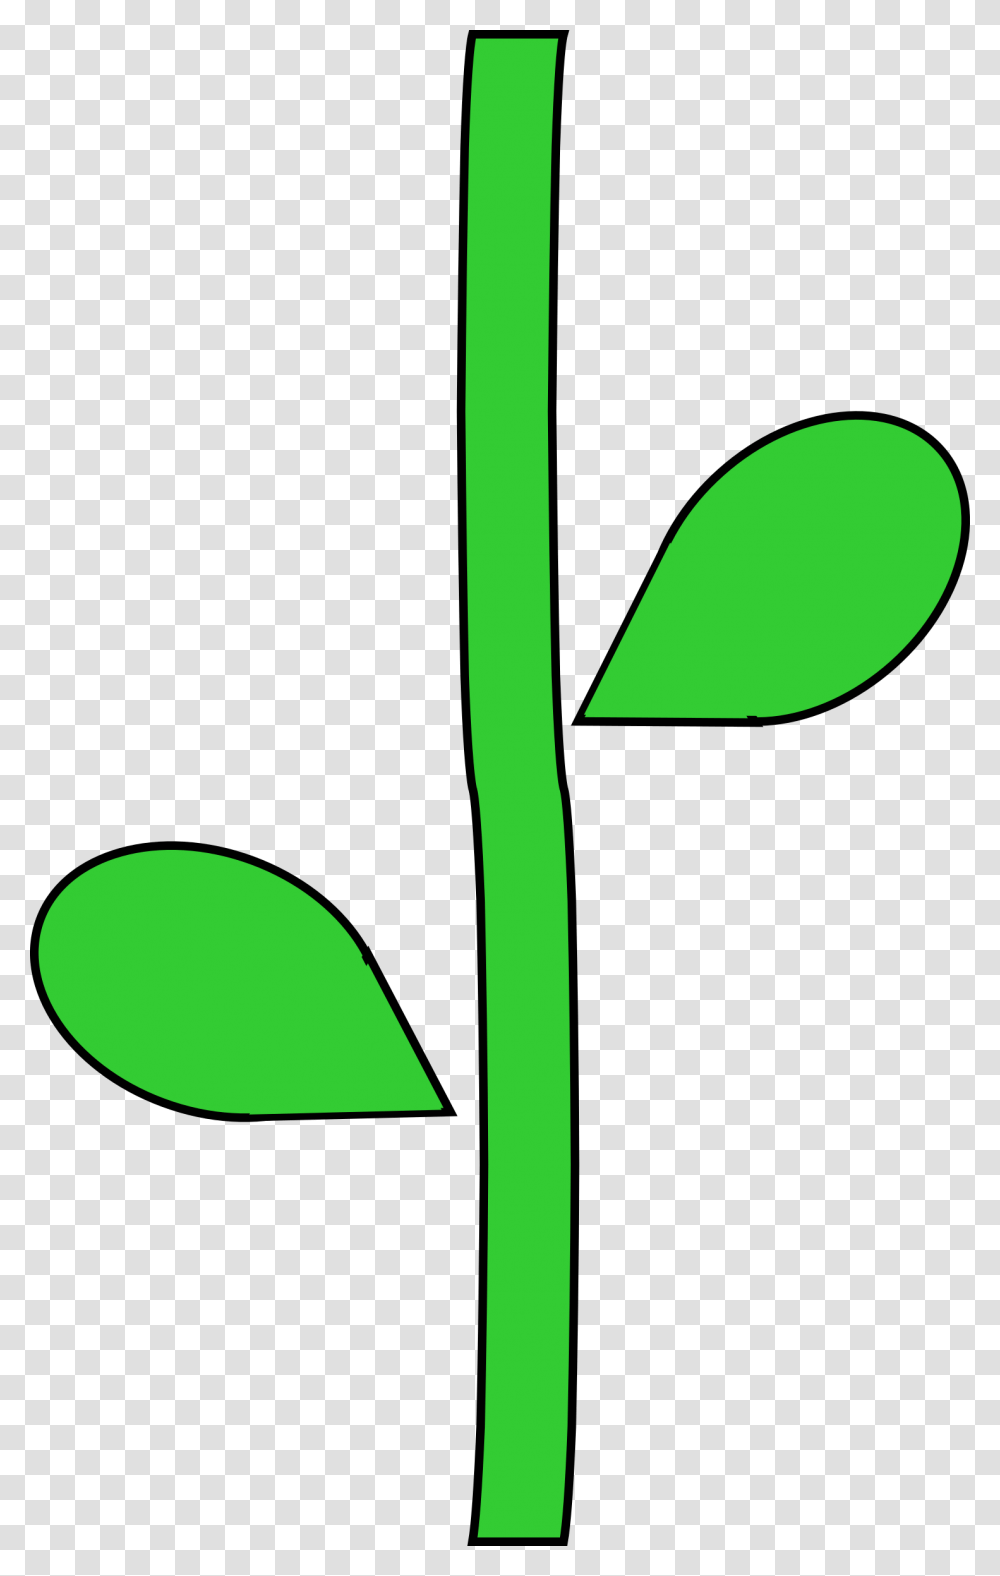 Flower Stem, Green, Plant, Food, Vegetable Transparent Png